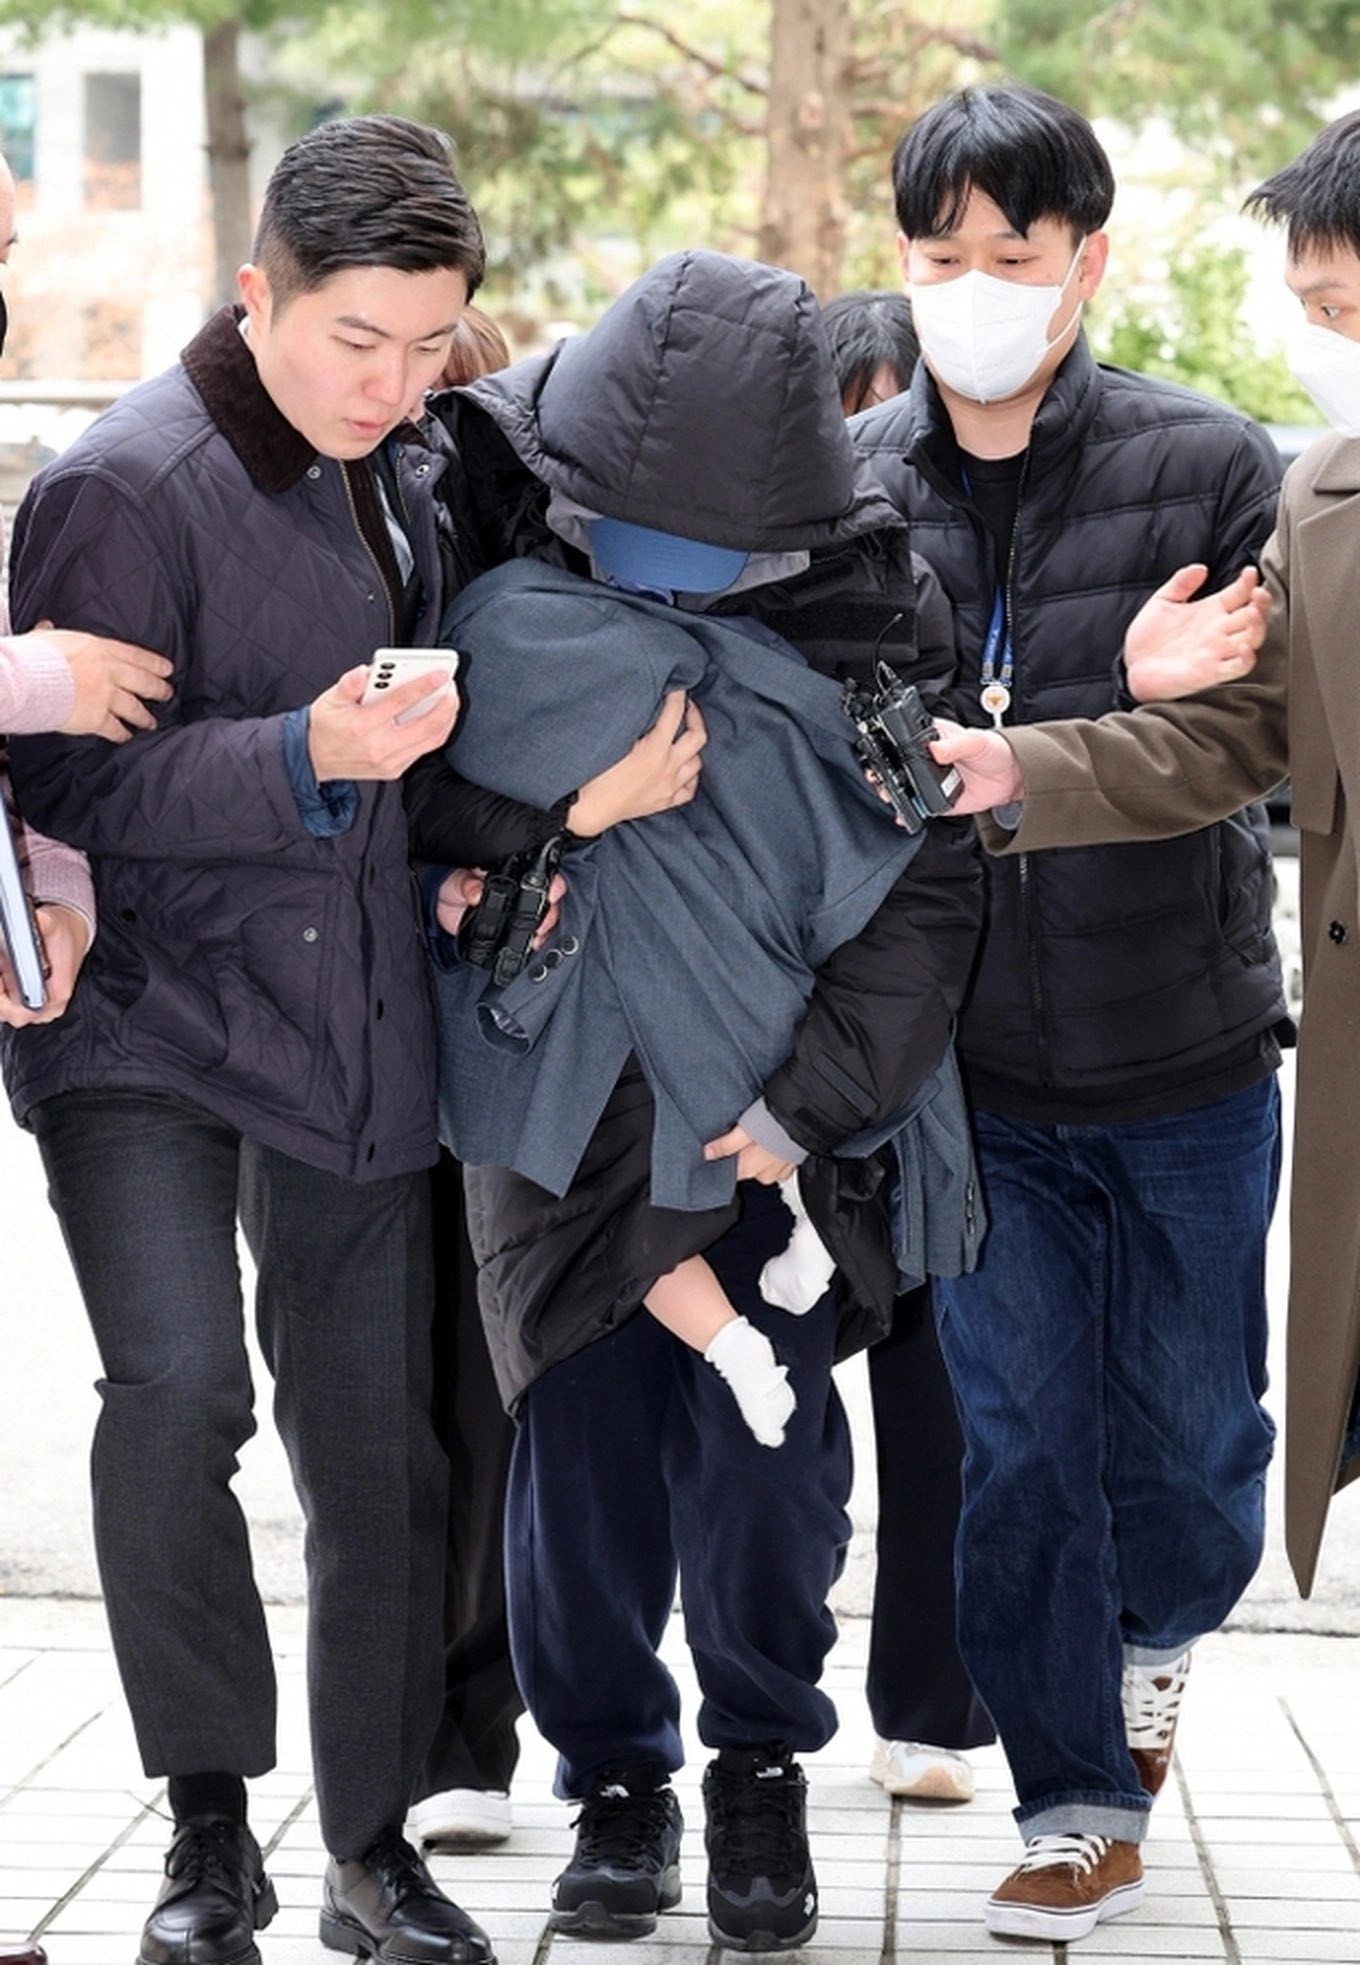 Người phụ nữ tên A bế theo một đứa trẻ khi bị cảnh sát bắt, ngày 28/12 (Ảnh: Chosun).